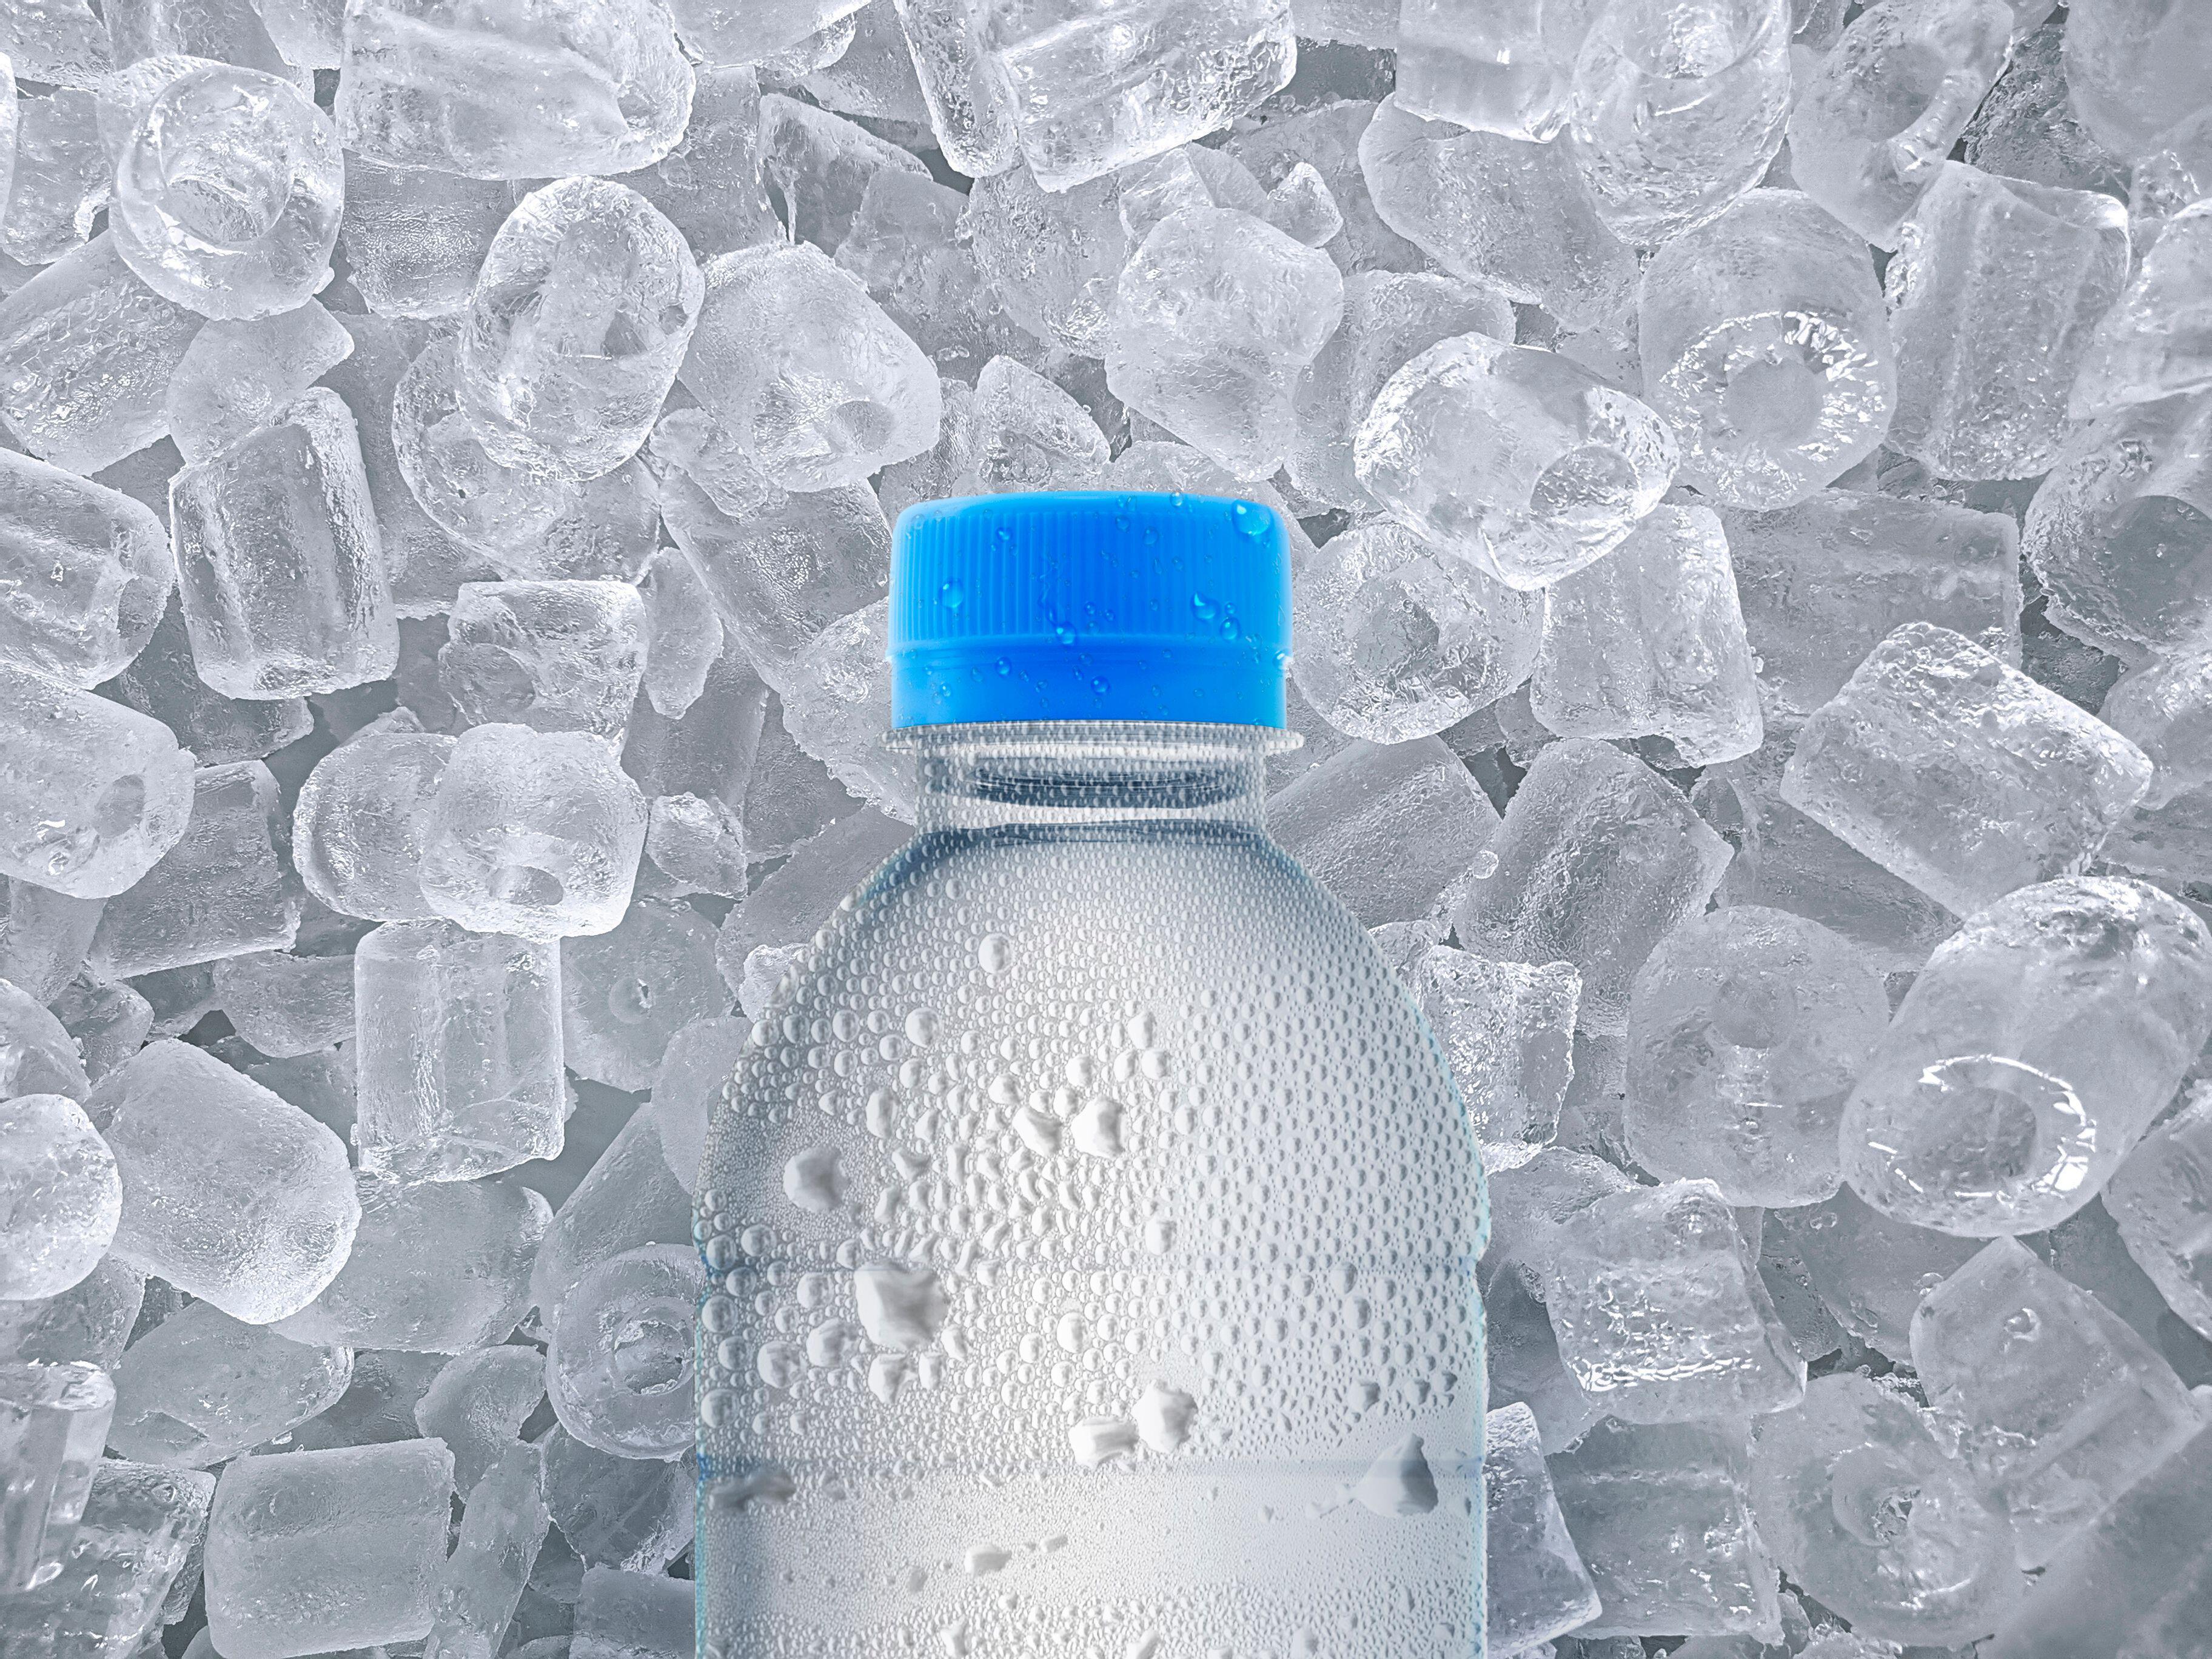 Замерзшая вода в бутылке 0,5. Бутылка Разбитая льдом. Расширение воды при замерзании. Бутылка воды Кипр. Замерзшая вода в бутылке